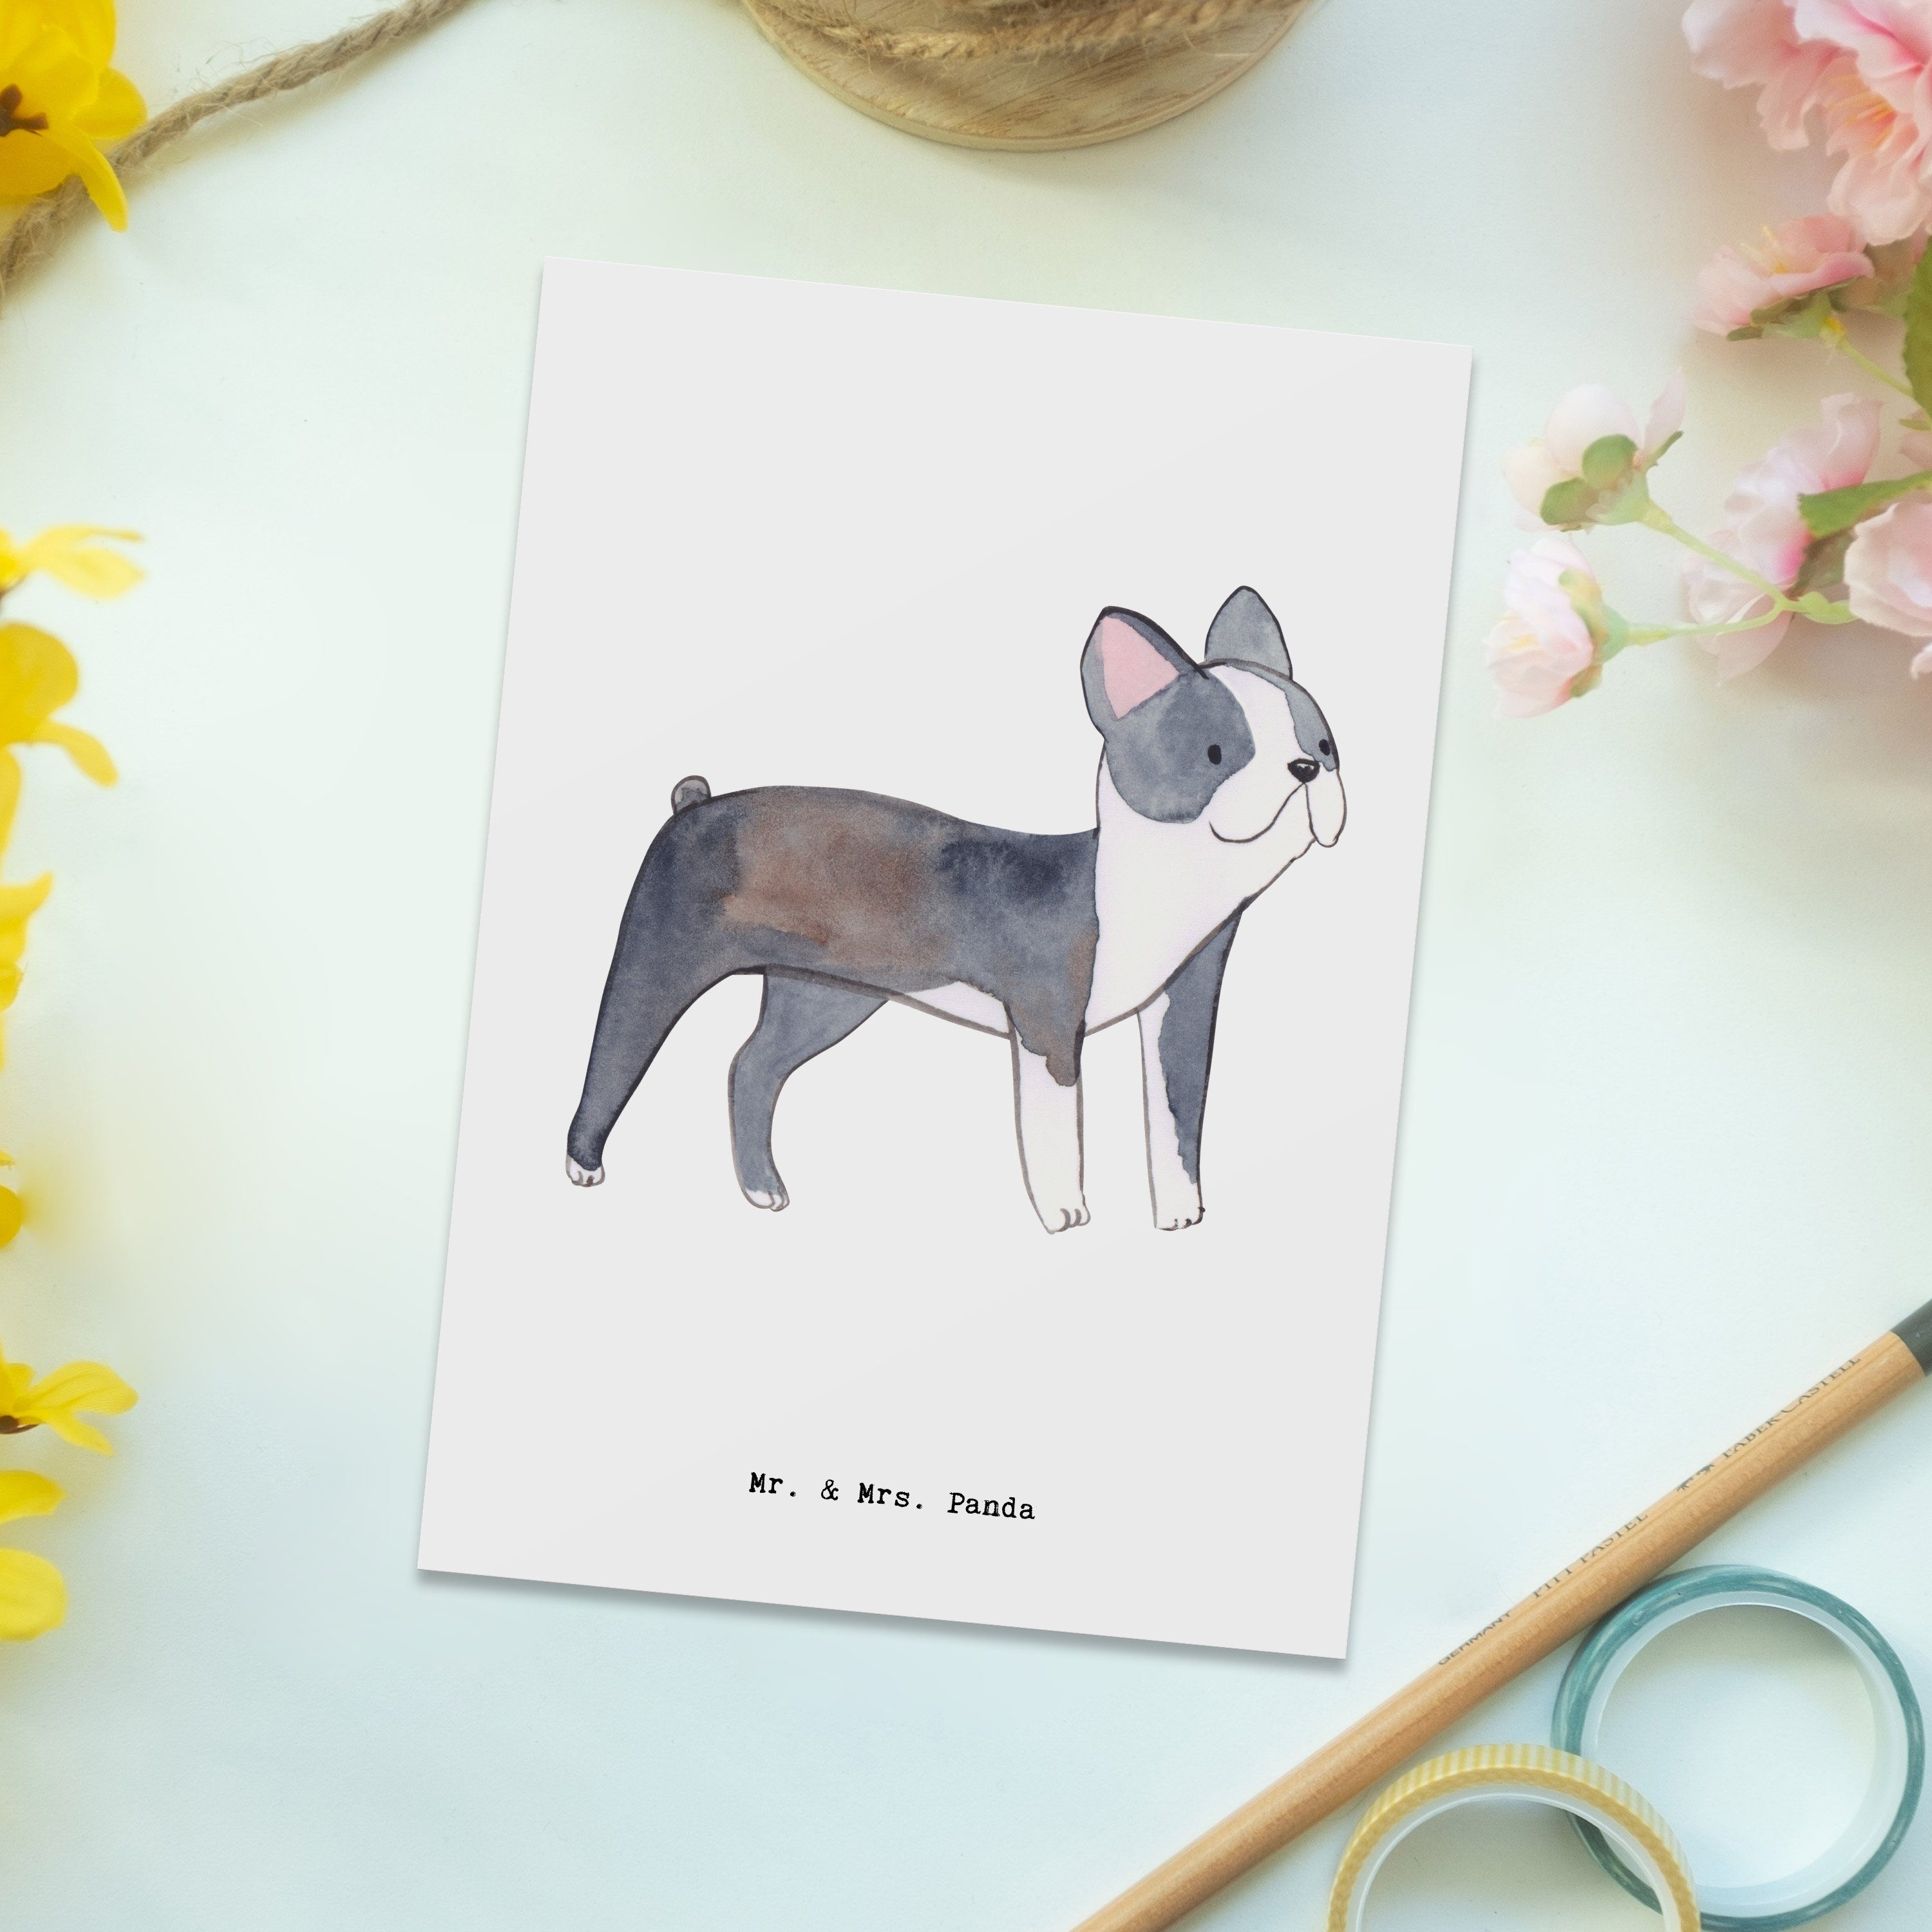 Mr. & Mrs. Panda - - Boston Geschenk, Terrier Postkarte Geschenkkarte, Tierfre Hund, Moment Weiß